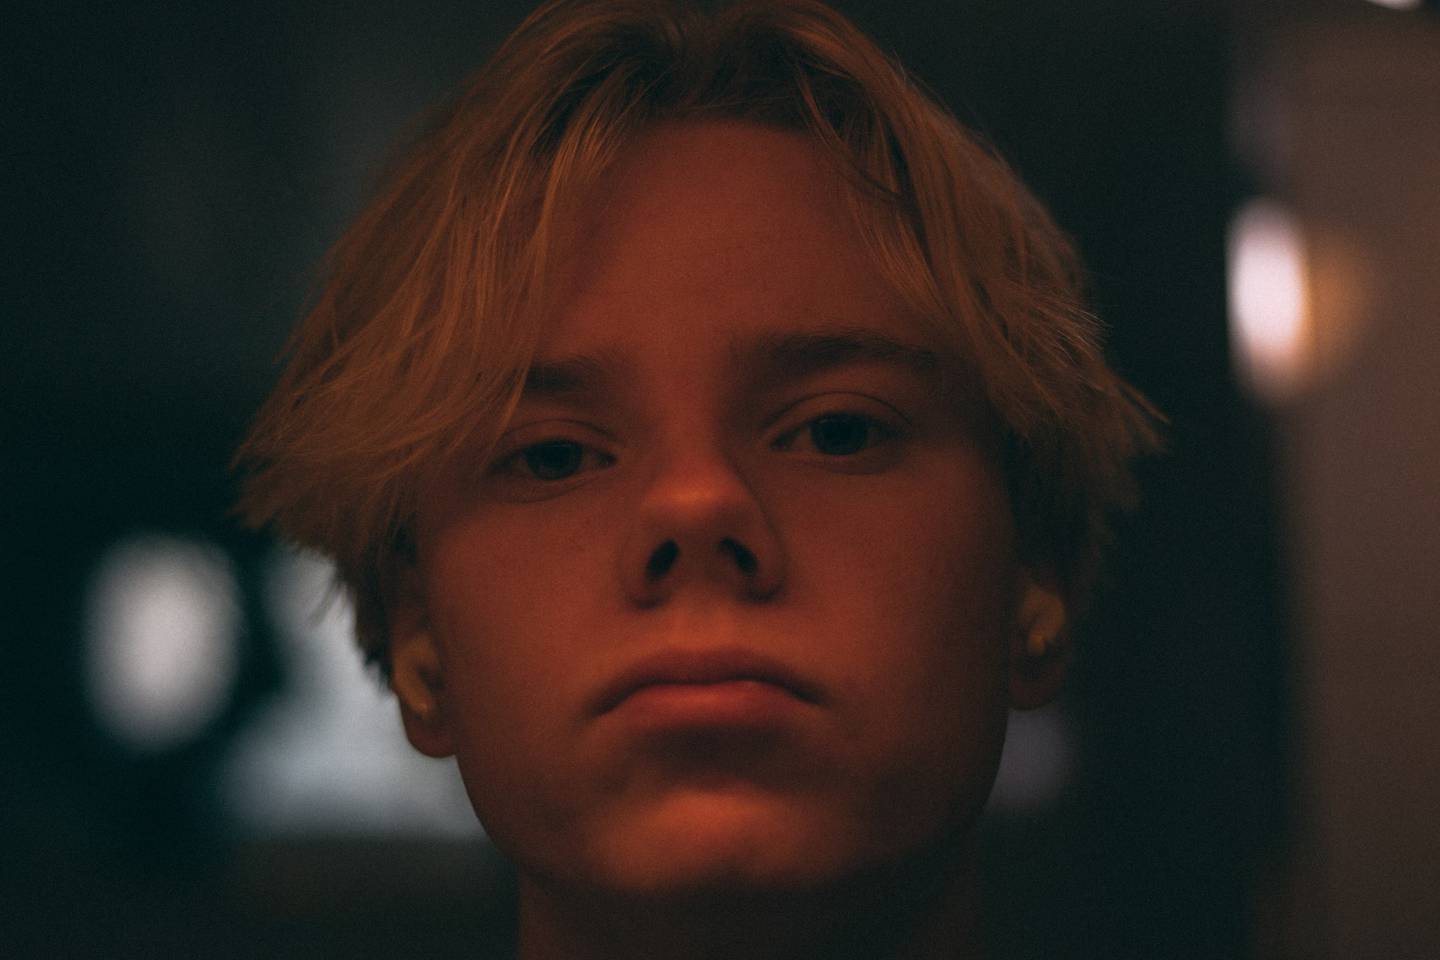 Fredrikstad-gutten Niklas Lyngfoss håper med filmene sine å gjøre noe godt for dem som har det vondt.